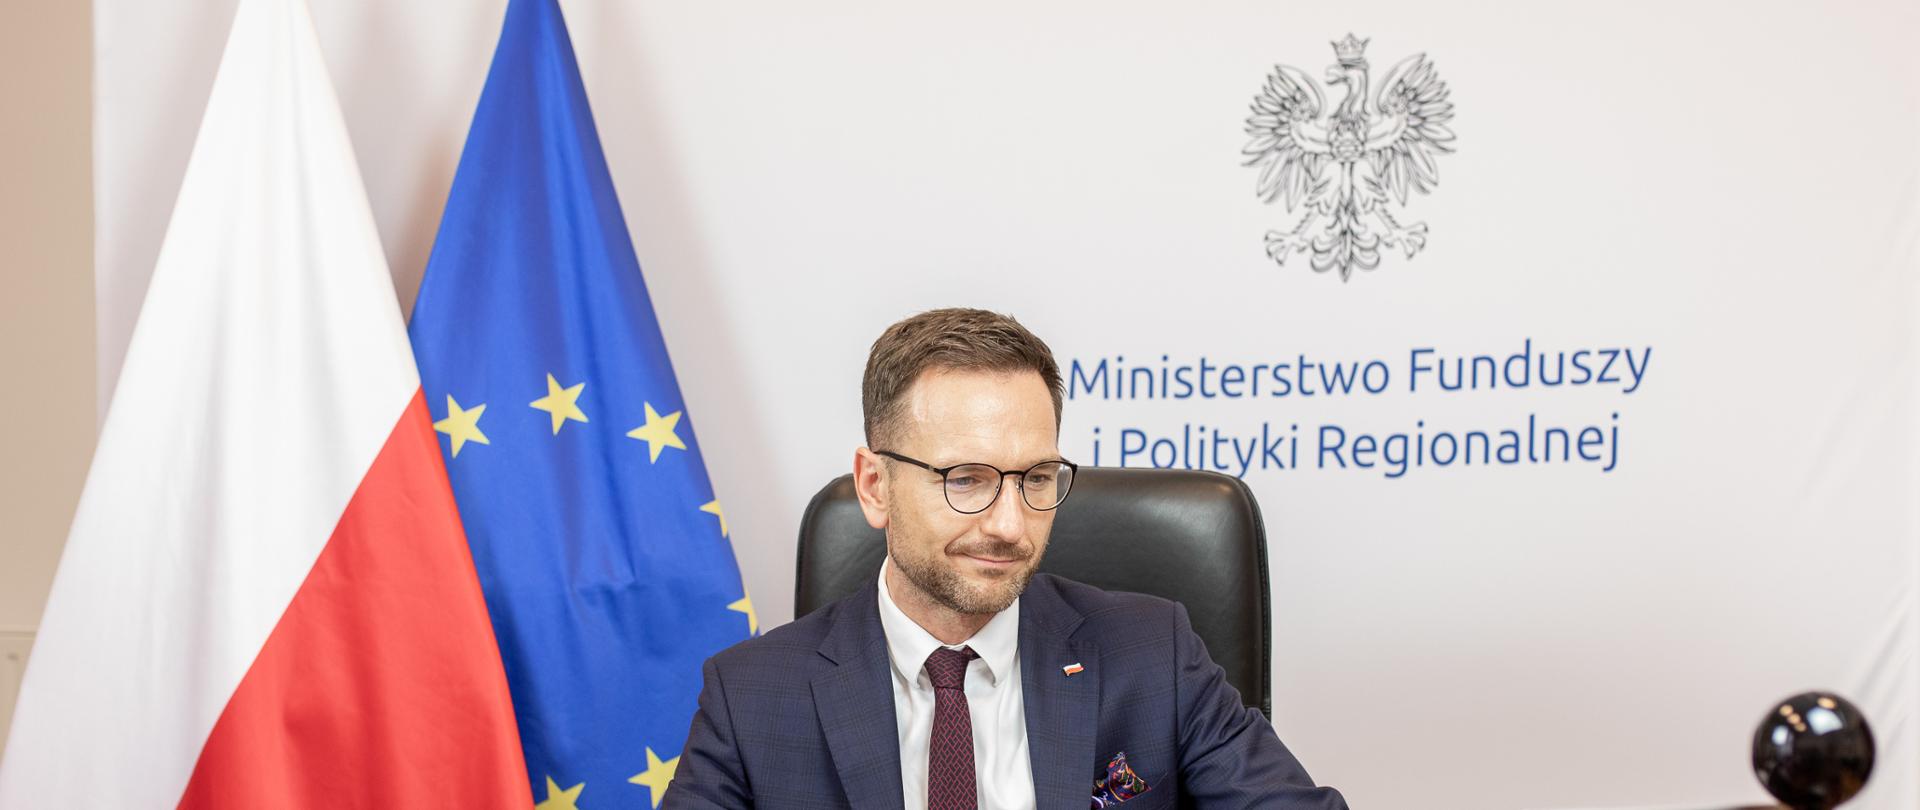 Minister Waldemar Buda przy biurku, w tle flaga Polski i Unii Europejskiej